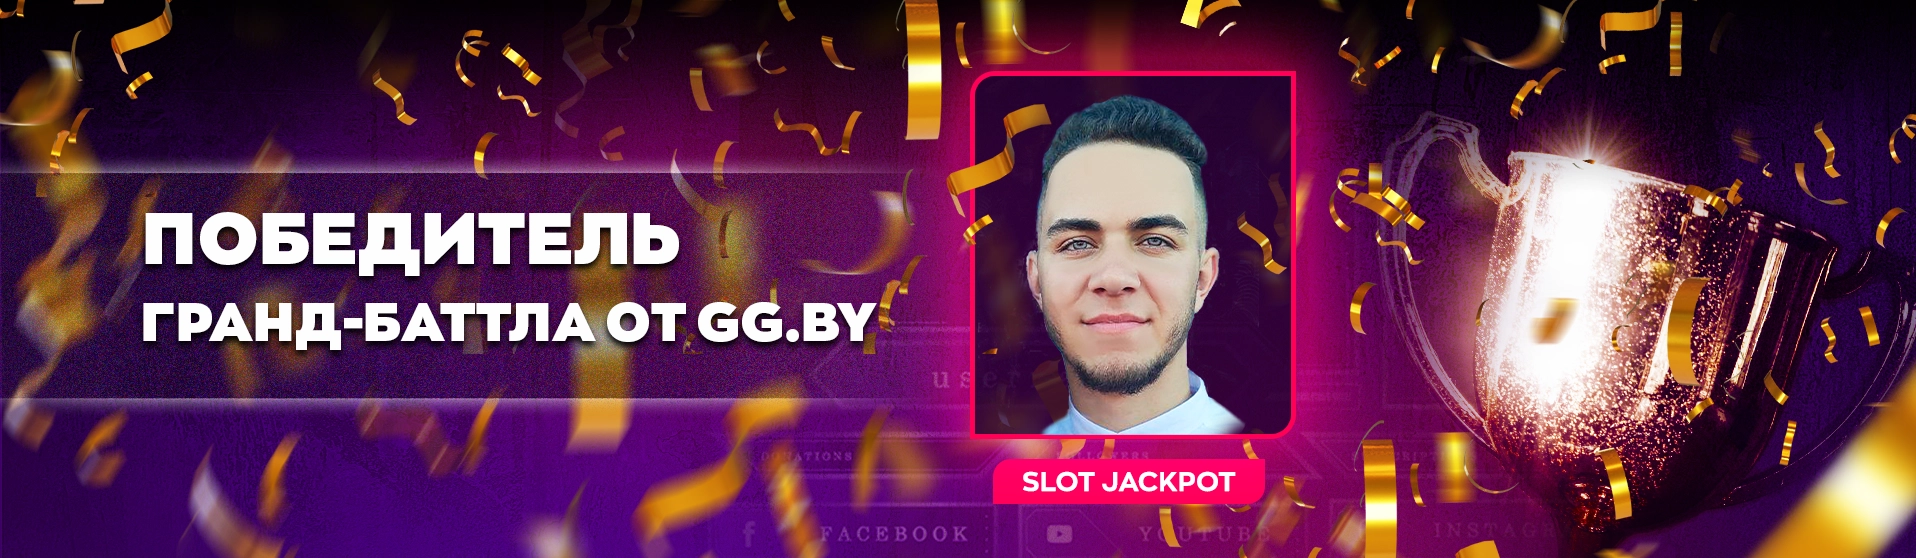 Лучший из лучших: победителем GRAND-баттла стримеров стал Slot Jackpot!